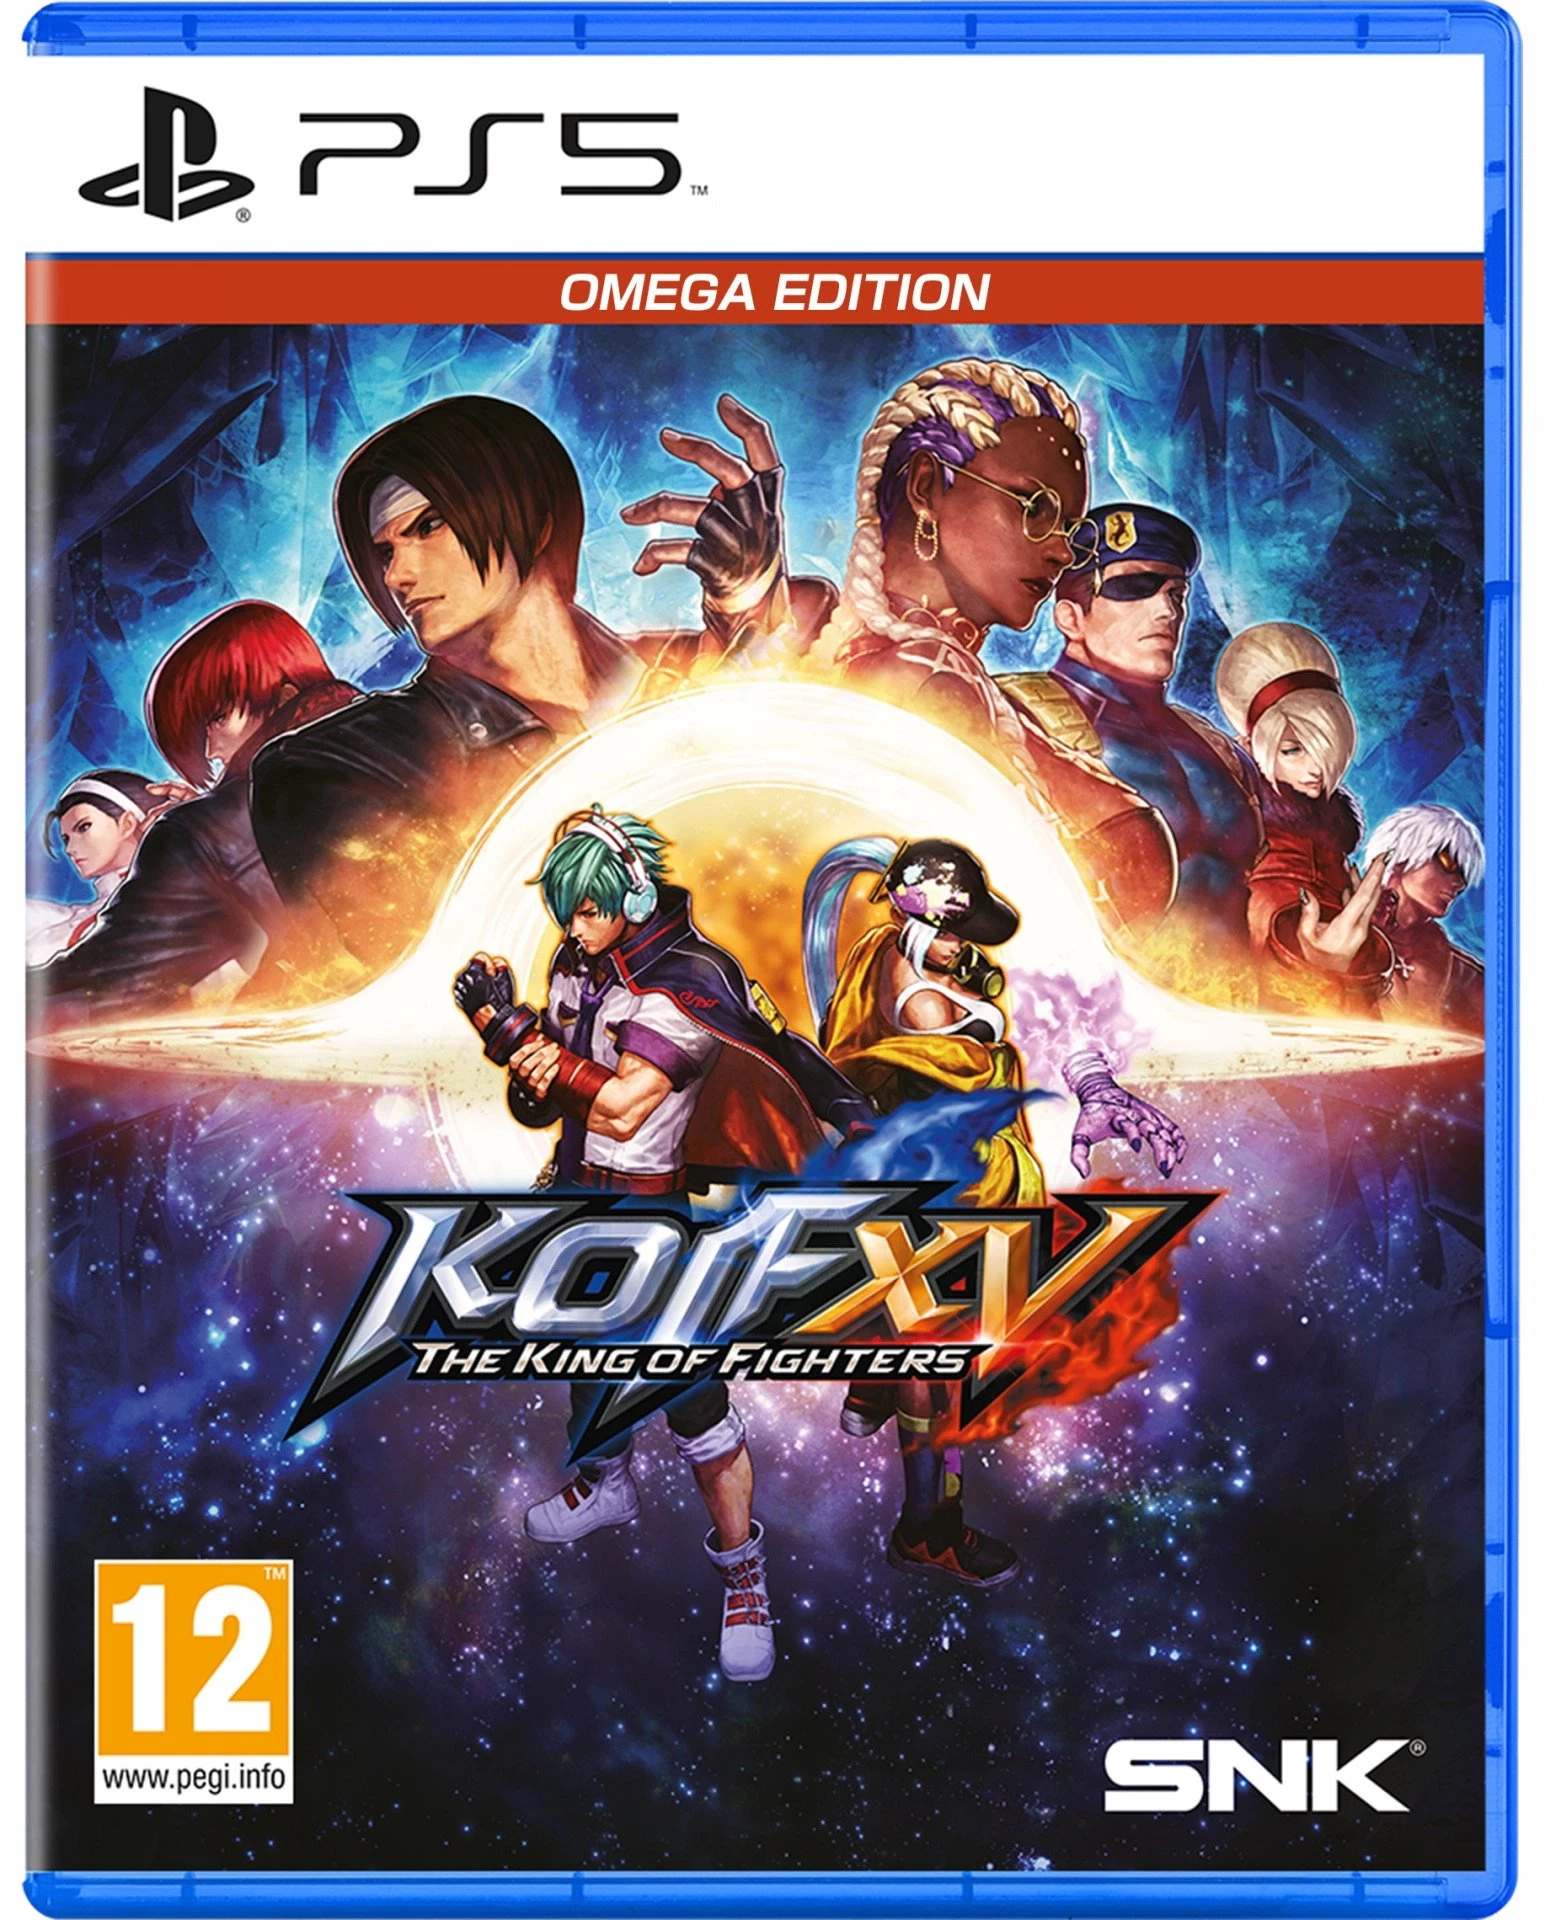 King of Fighters XV - Omega Edition voor de PlayStation 5 preorder plaatsen op nedgame.nl